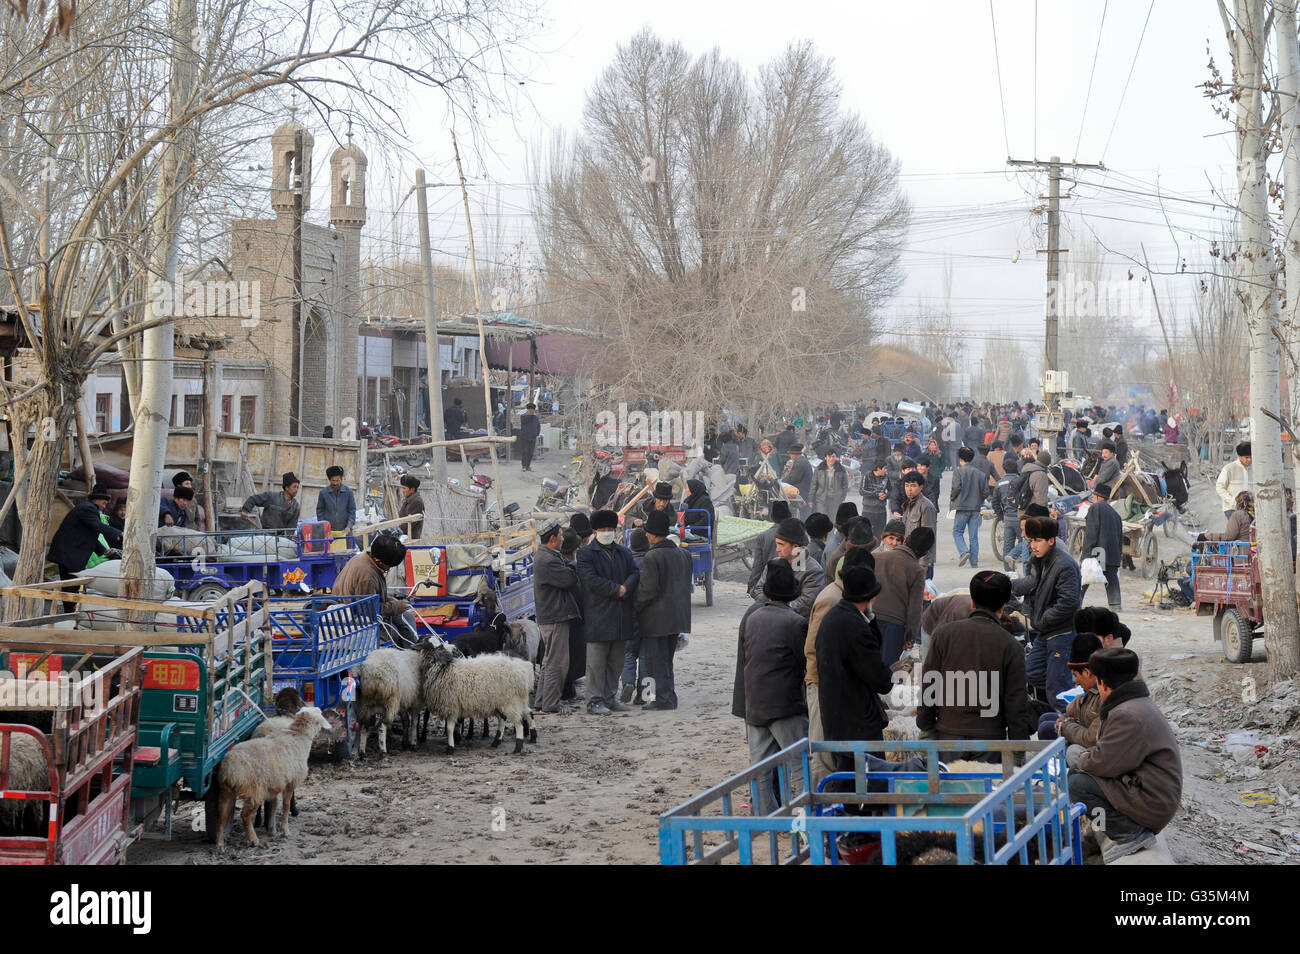 CHINA, Provinz Xinjiang, Markttag in der uigurischen Dorf Jin Erek in der Nähe der Stadt Kashgar, wo der Uiguren leben Leute, Männer verkaufen Schaf Schaf- und Ziegen Säugling der Moschee, uigurische Männer tragen eine pelzmütze Stockfoto